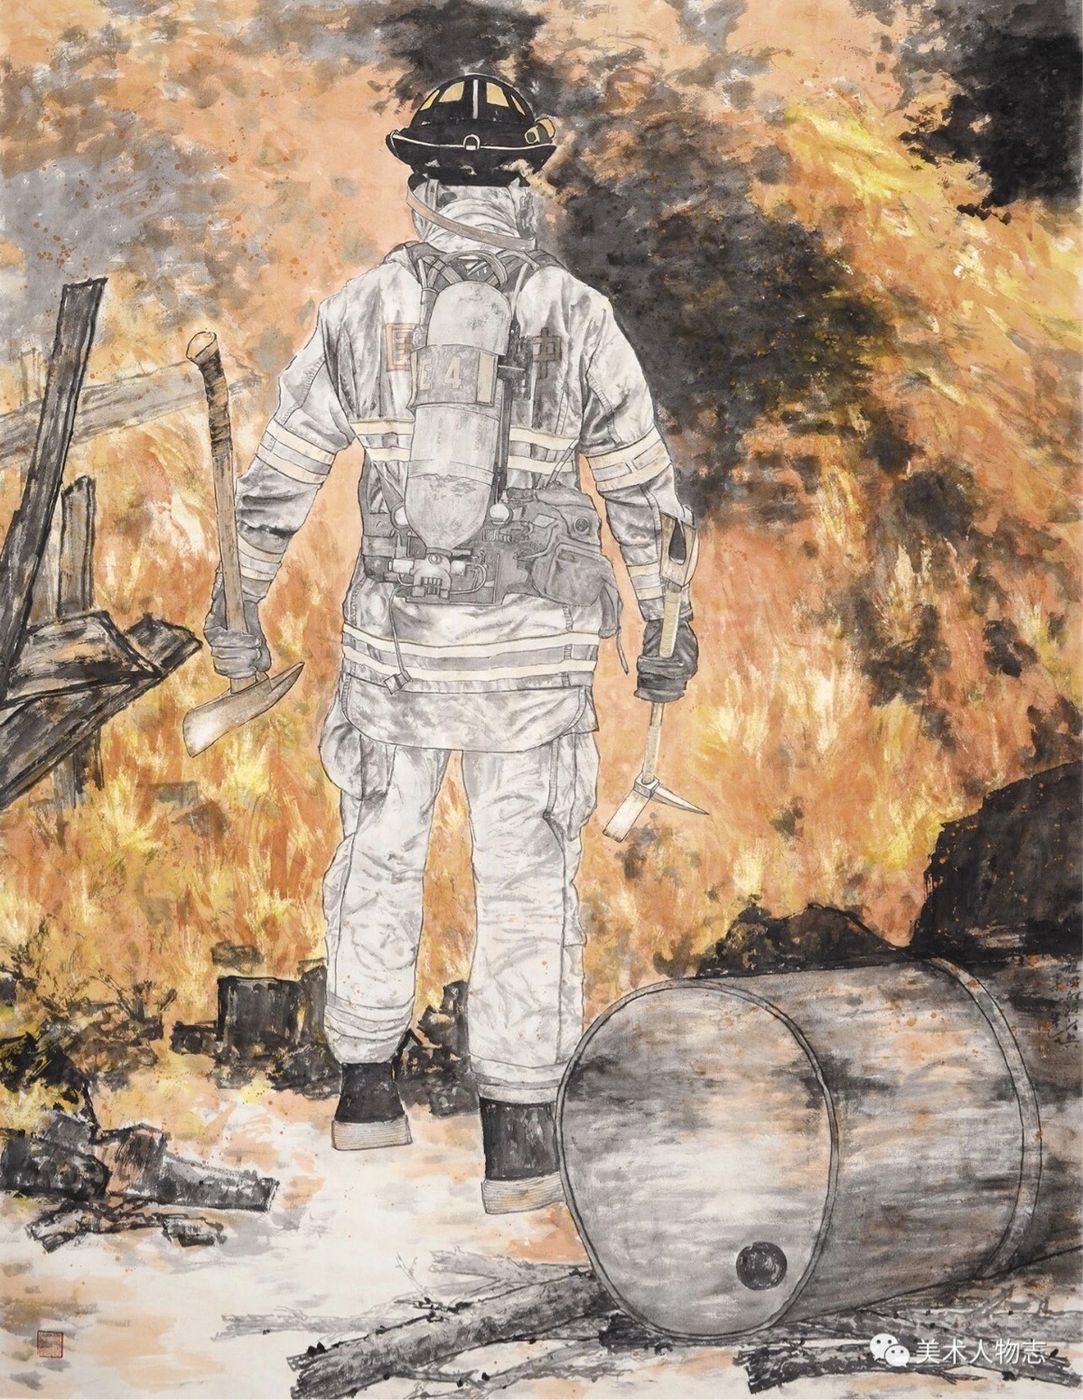 2015年作品《祖国的消防兵一逆行》入选古蜀文脉墨韵天府全国中国画